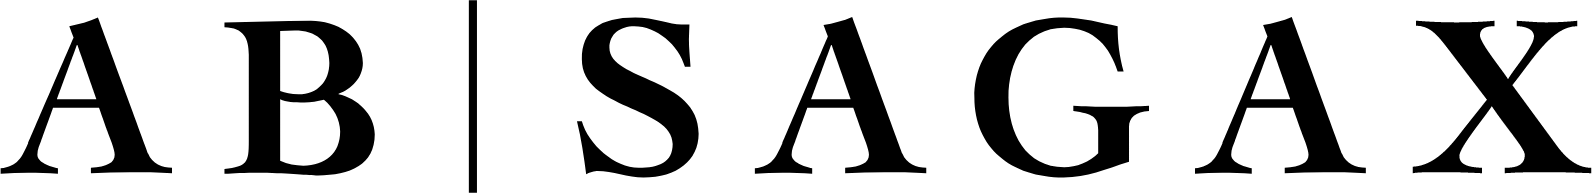 Sagax logo large (transparent PNG)